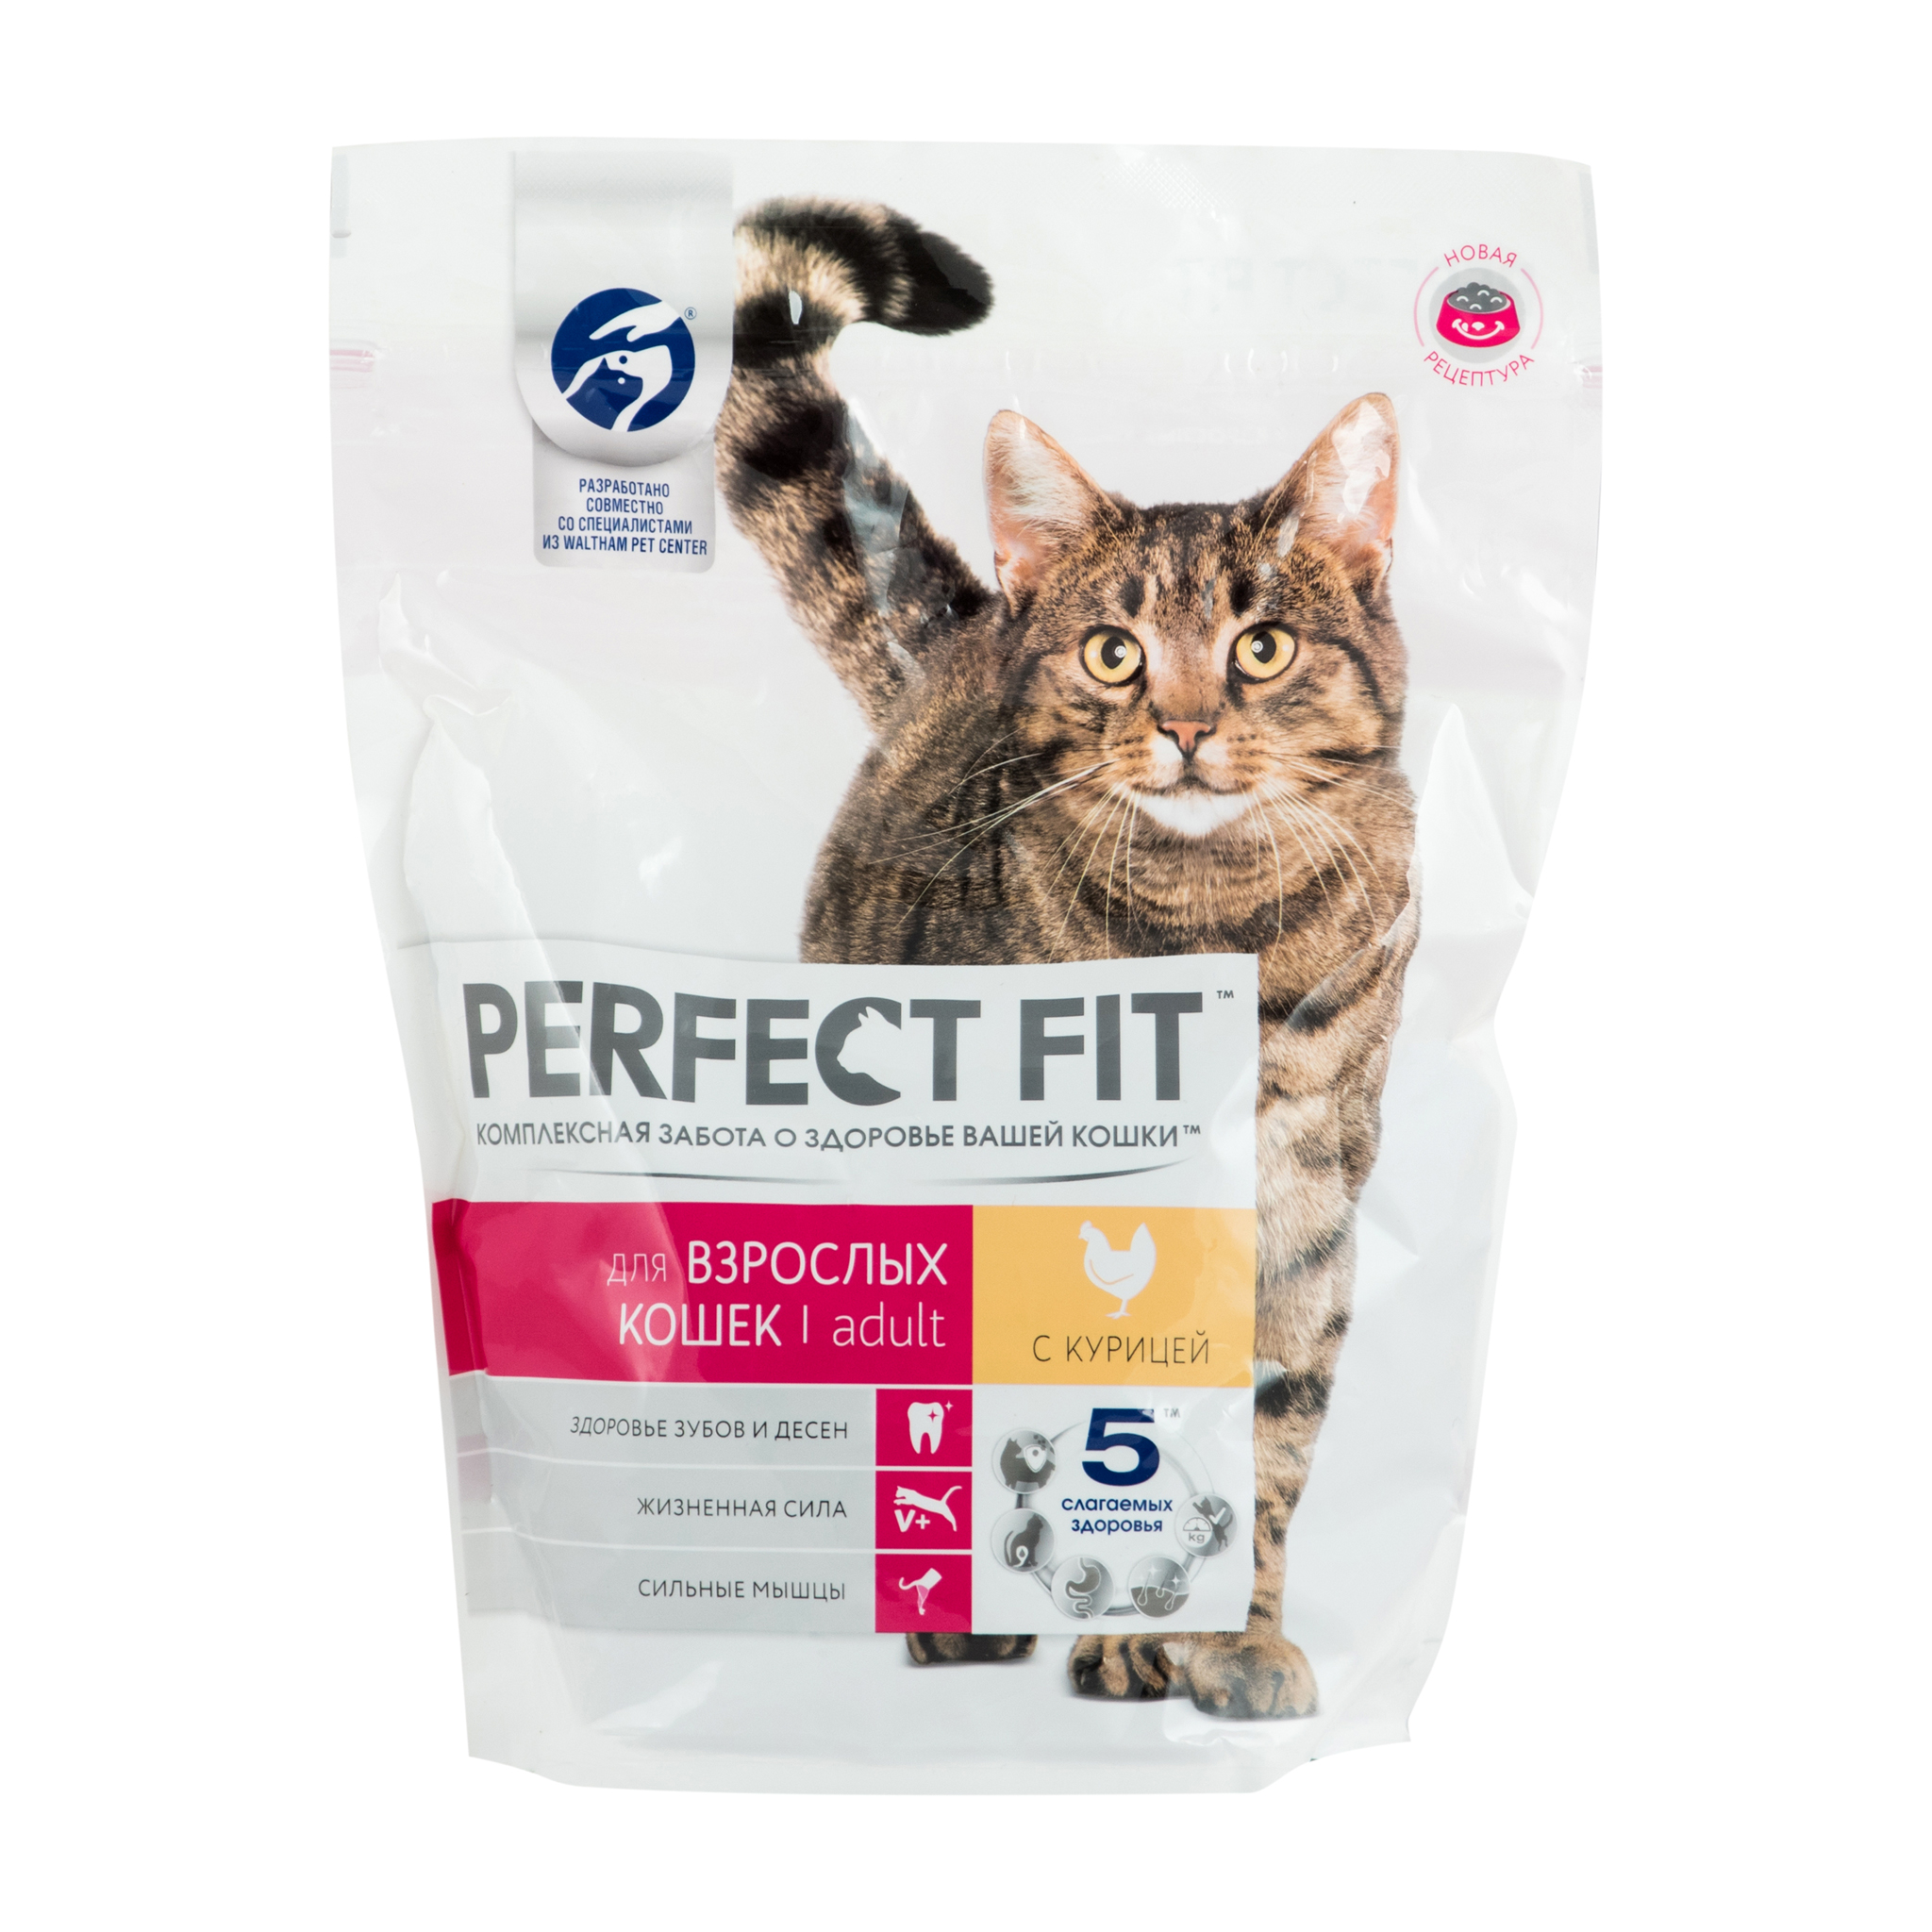 Сухой корм для кошек Perfect Fit Adult с курицей - рейтинг 2,84 по отзывам  экспертов ☑ Экспертиза состава и производителя | Роскачество